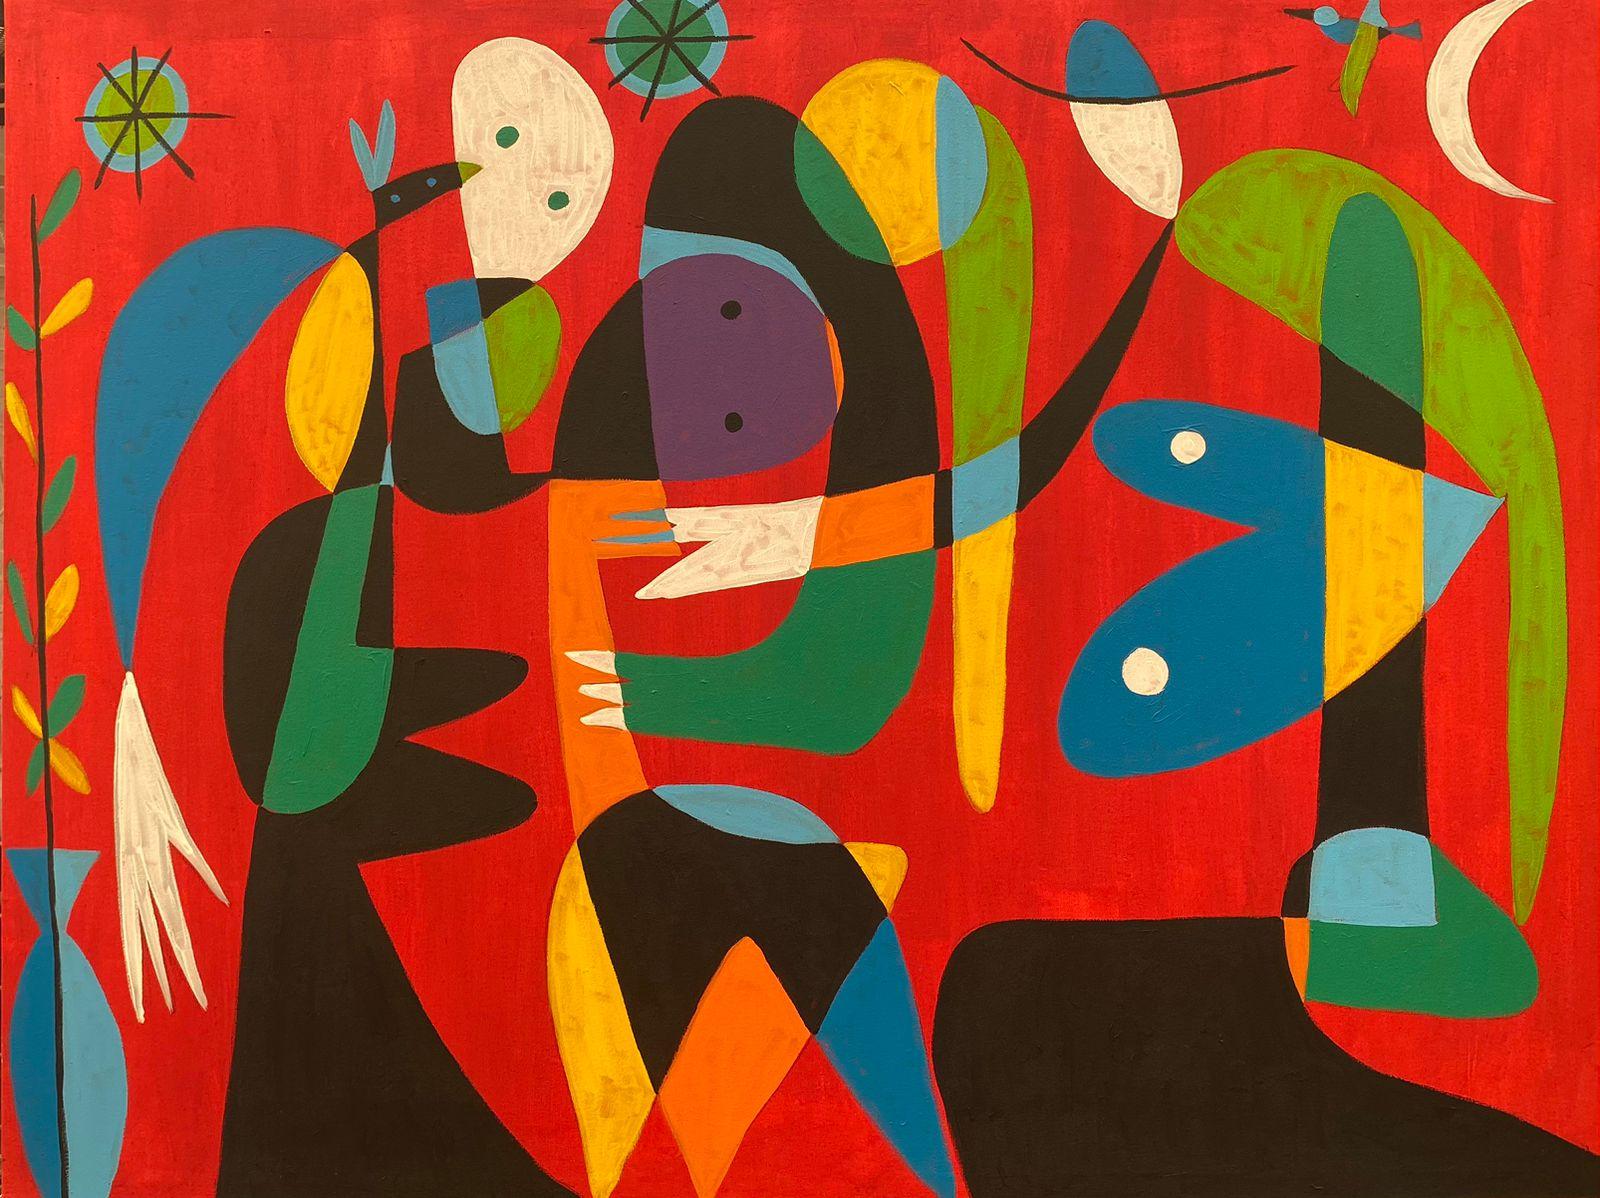 Abstract Painting Enrique Pichardo - Atencion Personal, Art contemporain, Peinture abstraite, 21ème siècle